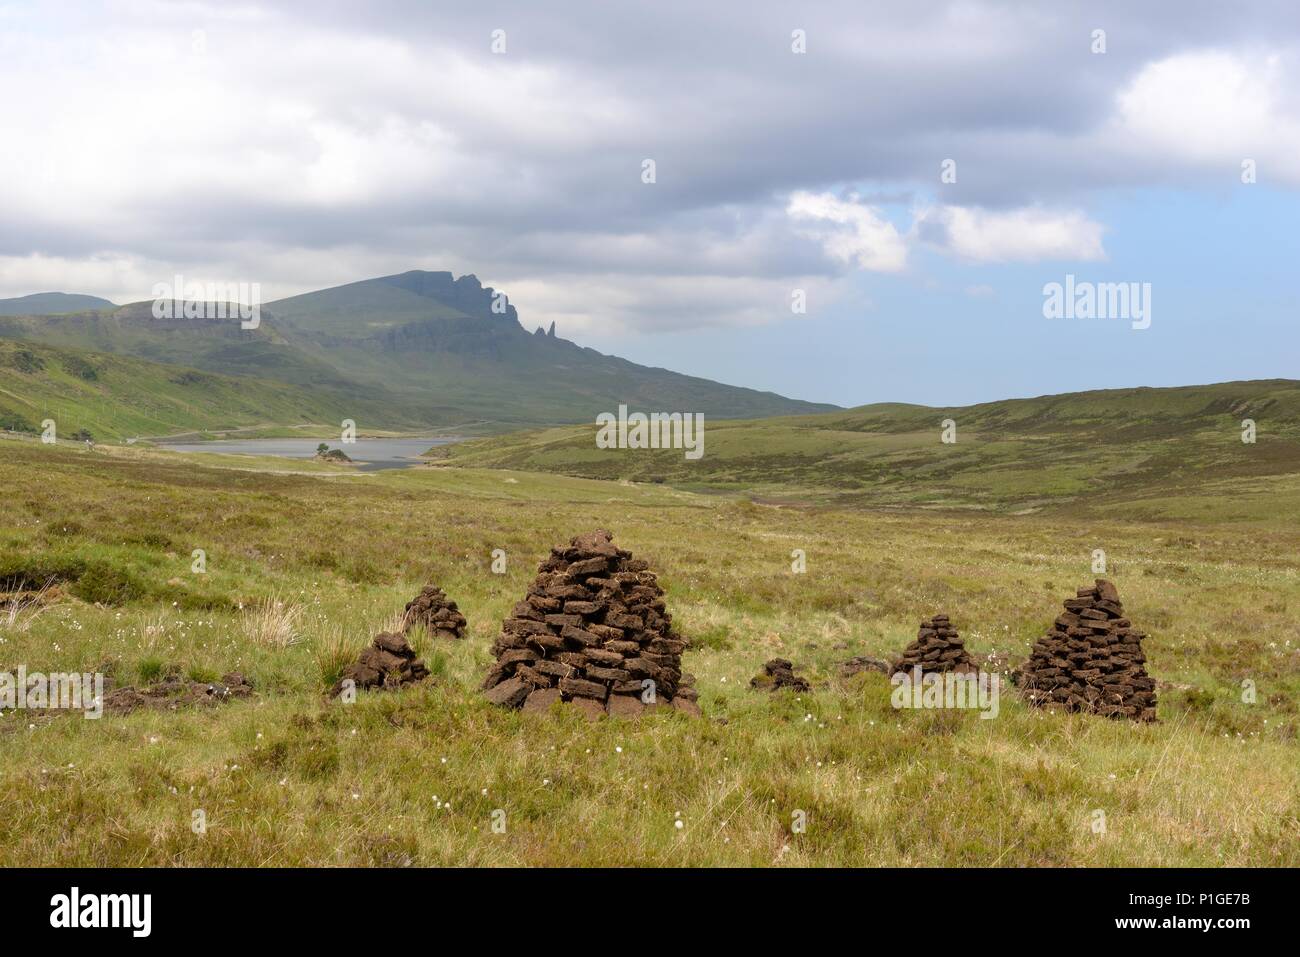 Bloques de cortar turba apilada durante el secado en la península de Trotternish la Isla de Skye, en Escocia. 'El' Storr Rocky Hill proporciona el telón de fondo. Foto de stock